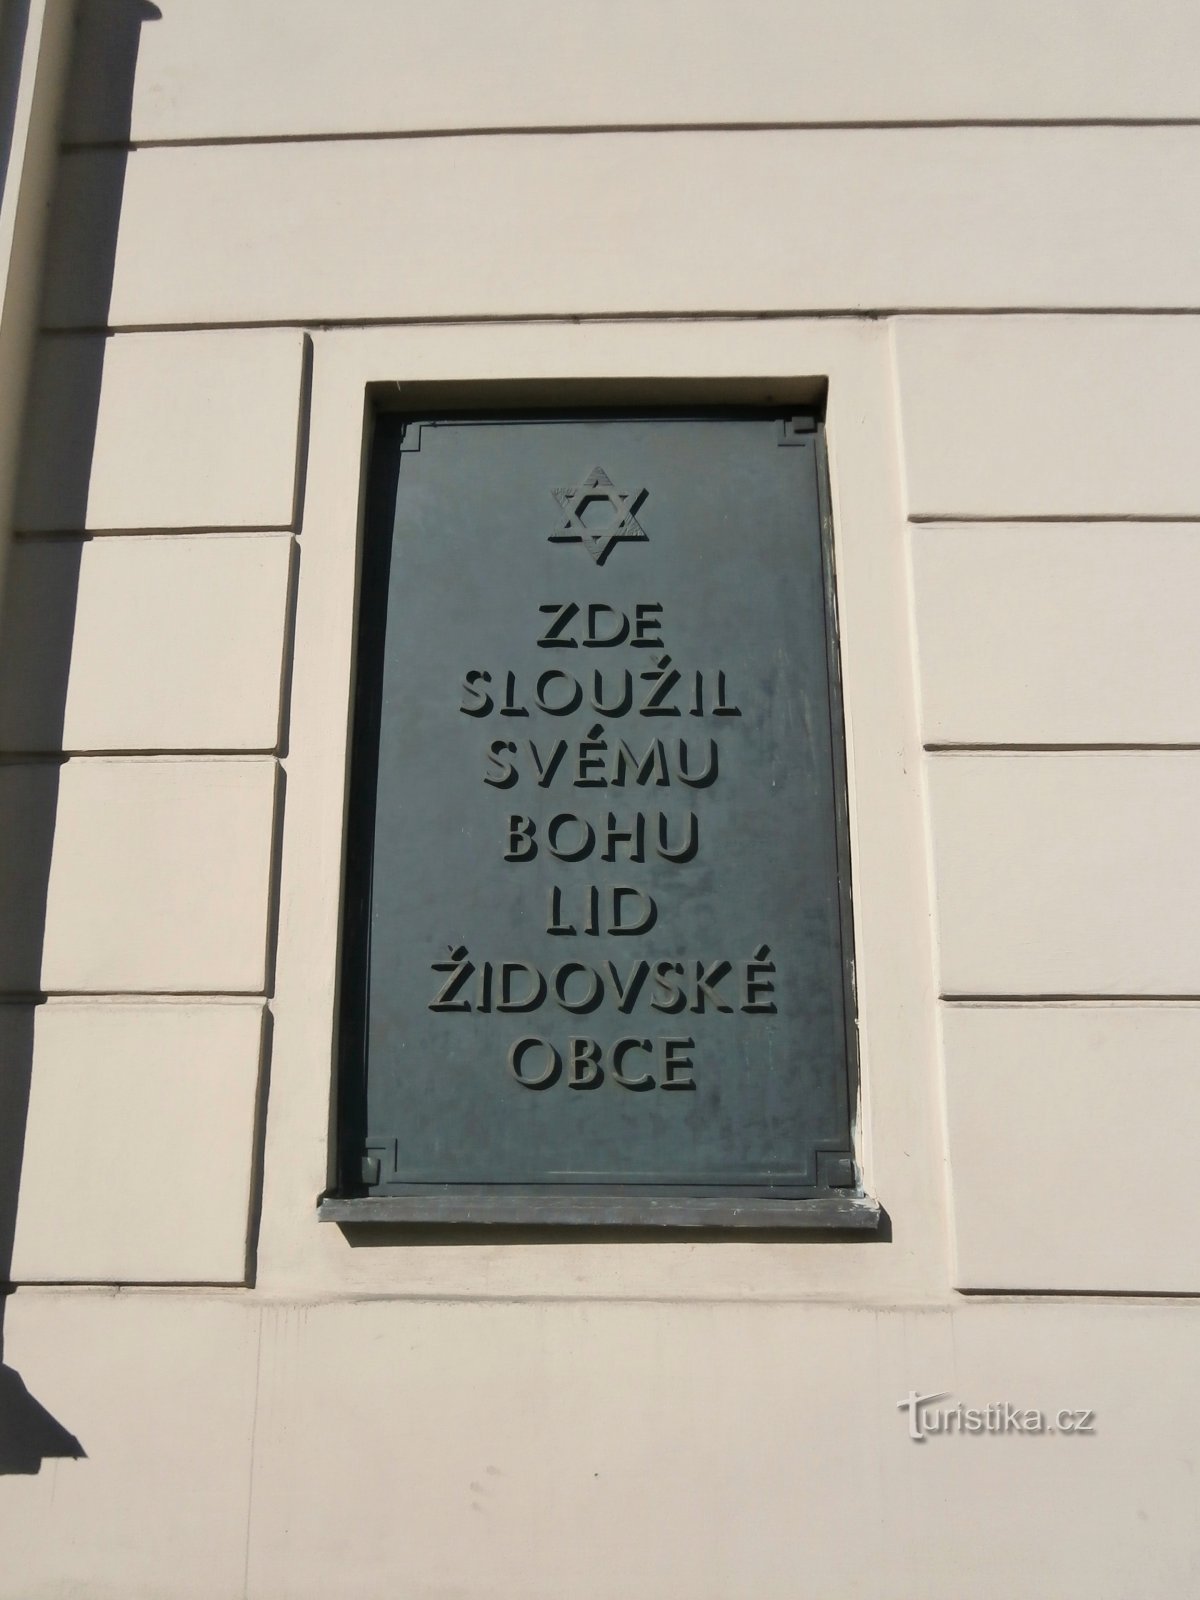 Spomen ploča na bivšoj sinagogi (Hradec Králové)